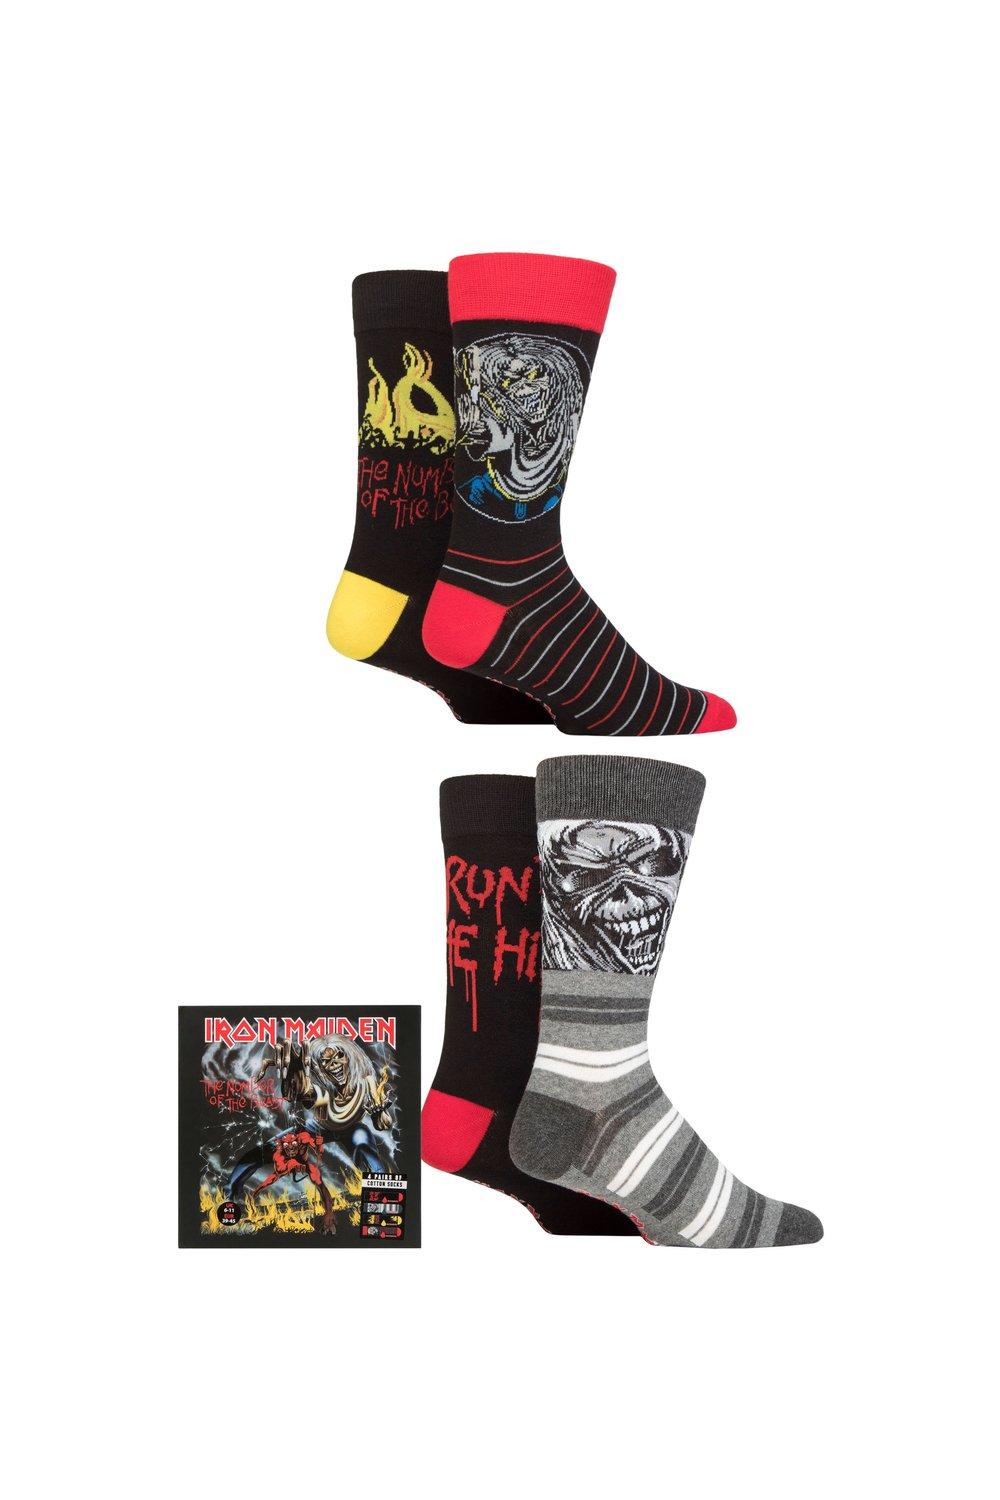 Iron Maiden, 4 пары хлопковых носков в подарочной упаковке, эксклюзивно для SOCKSHOP, мультиколор iron maiden the number of the beast lp